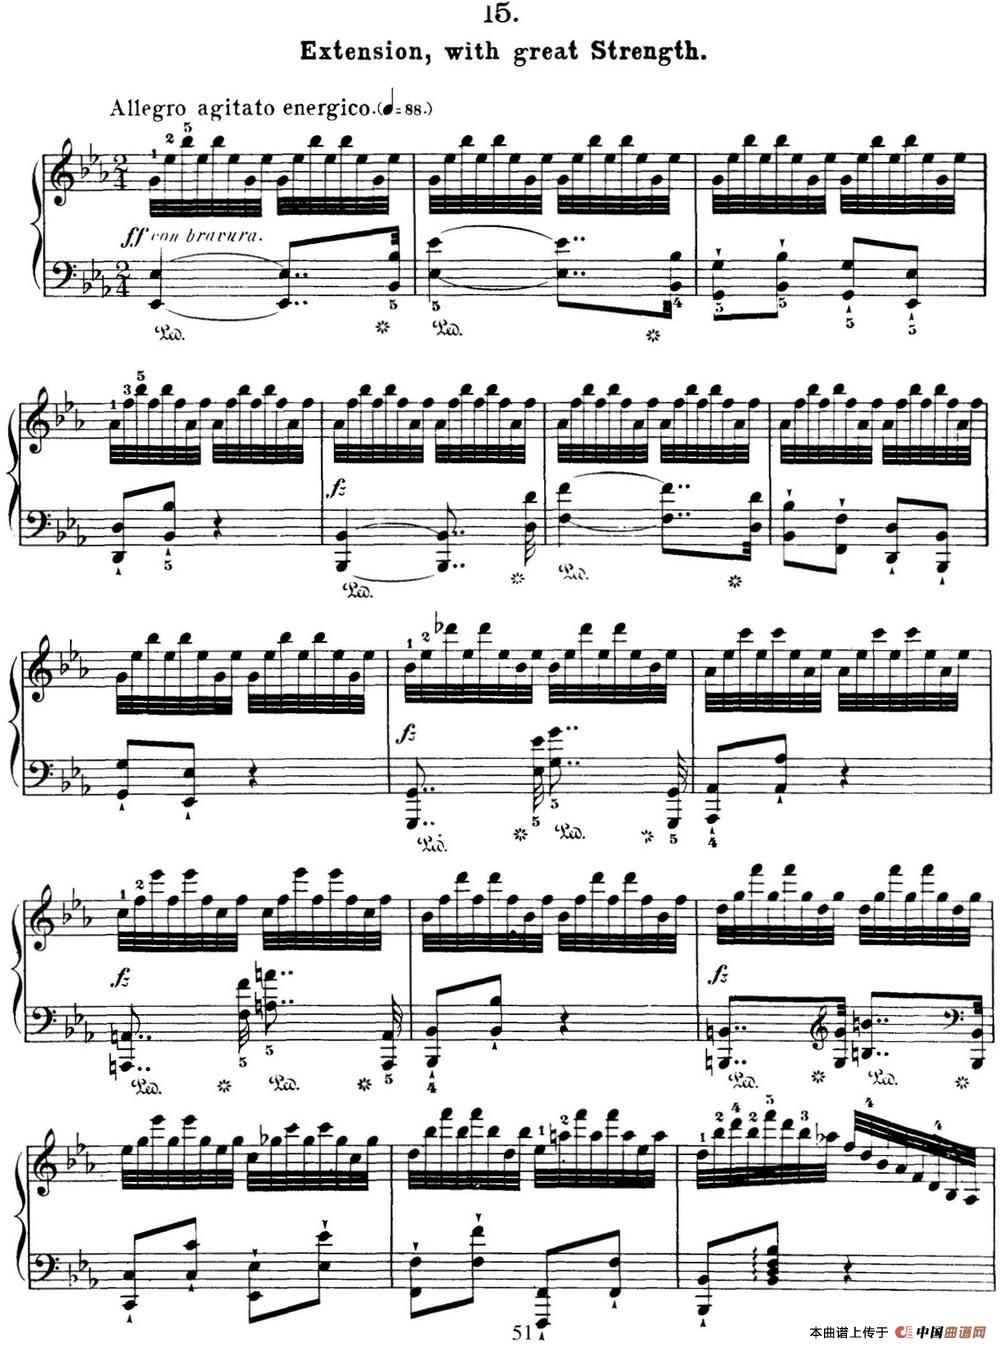 50首车尔尼Op.740钢琴手指灵巧技术练习曲（NO.15）(1)_C740_页面_051.jpg